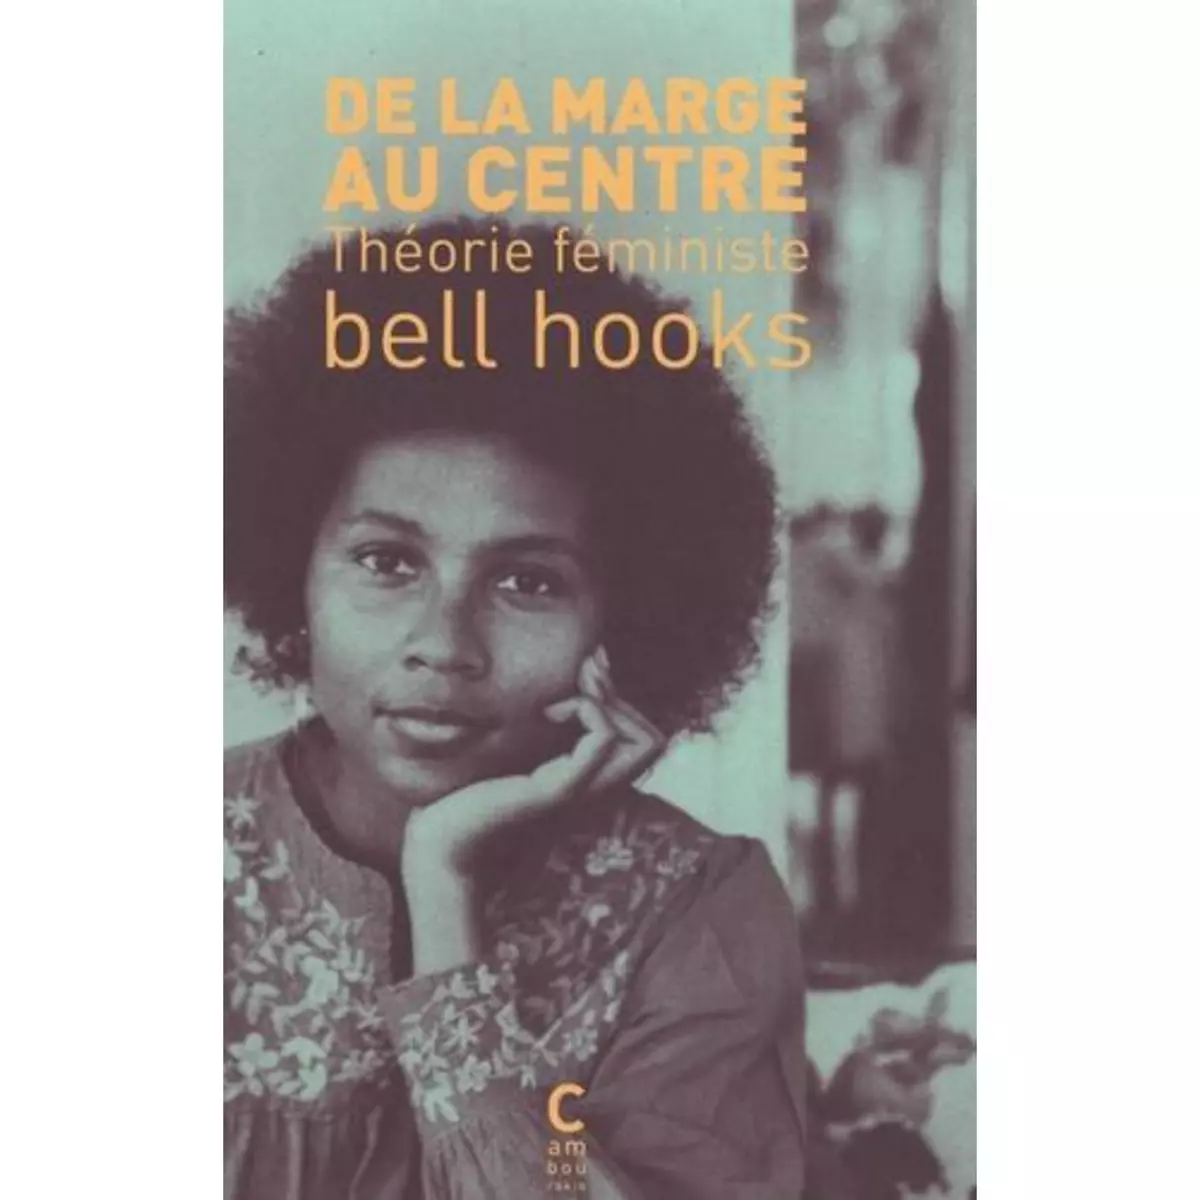  DE LA MARGE AU CENTRE. THEORIE FEMINISTE, Hooks Bell